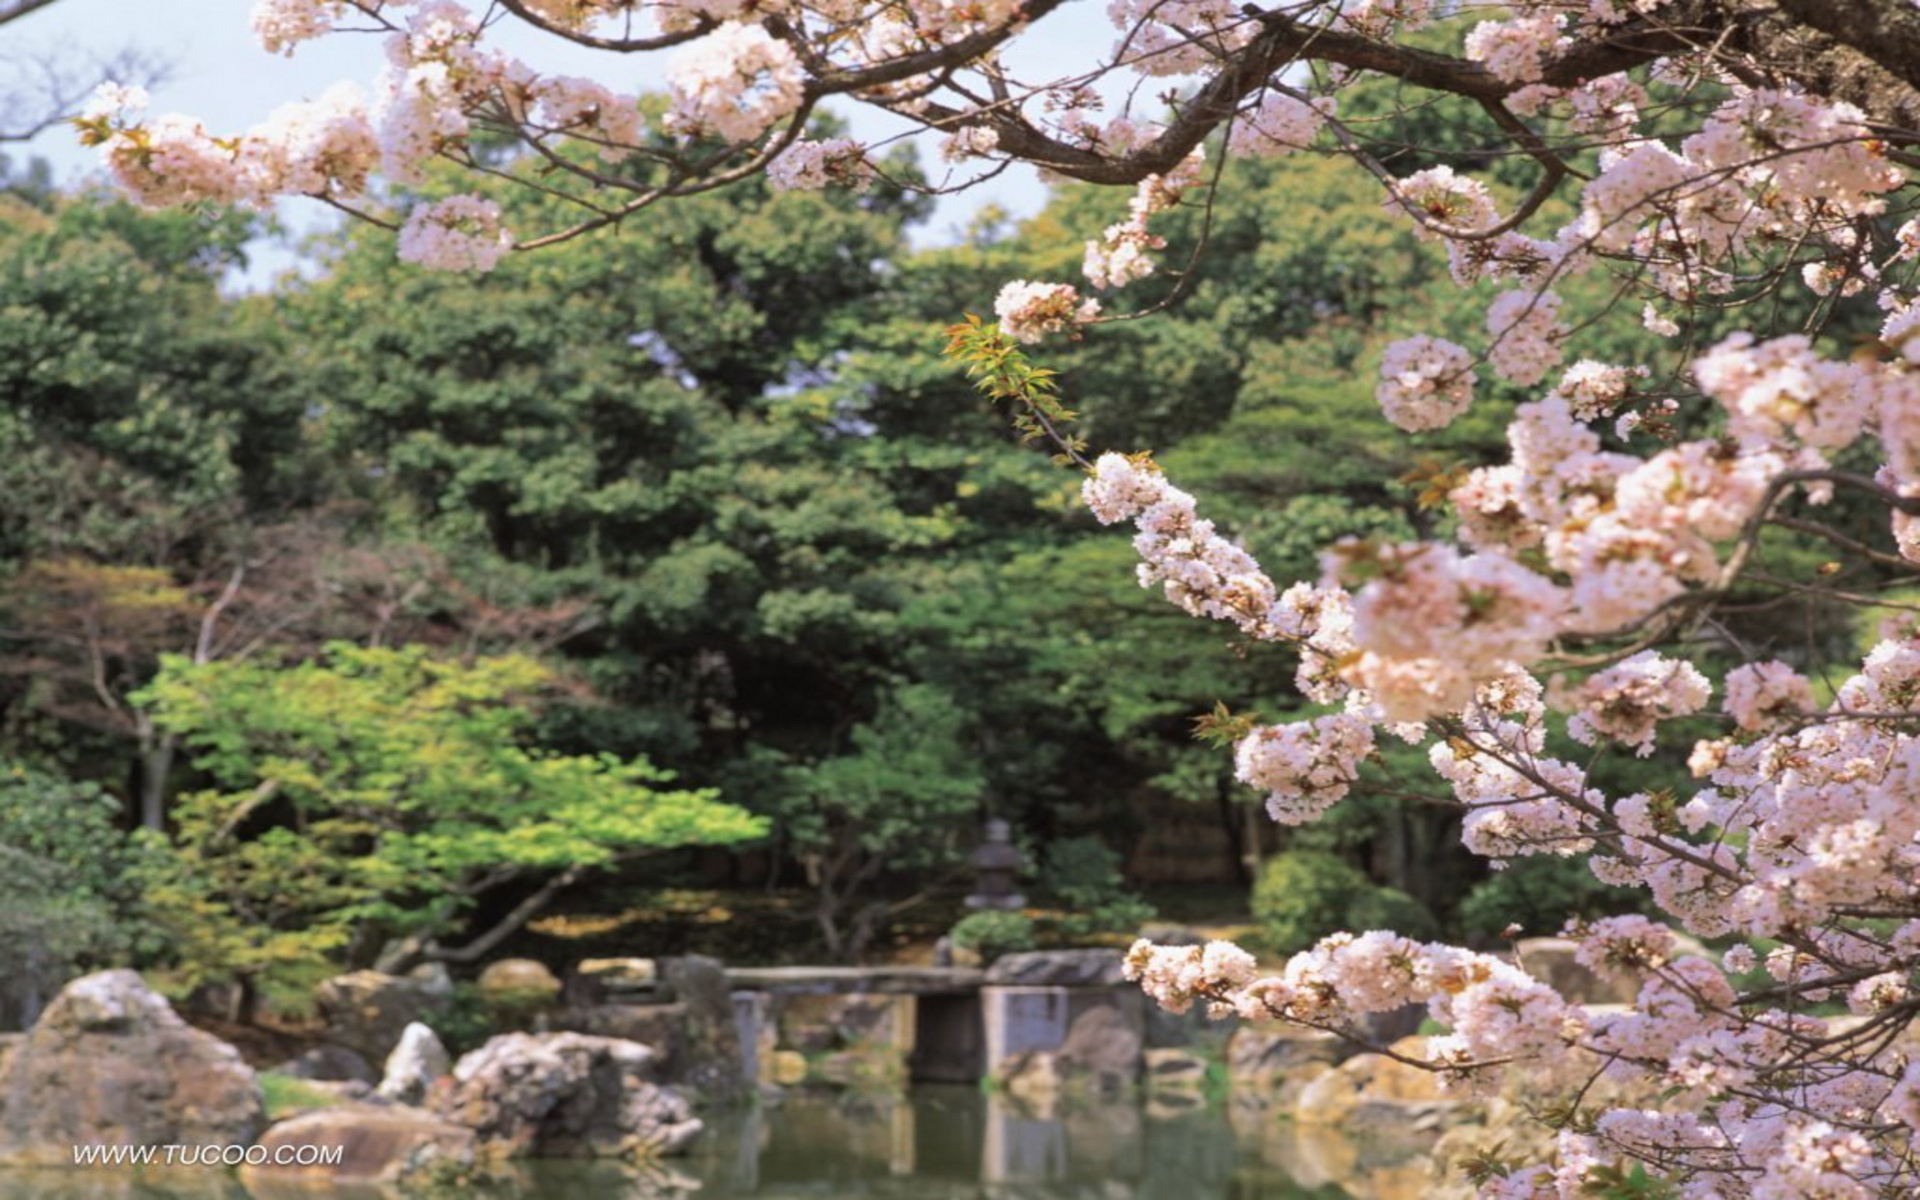 Wallpaper Japanese Garden 3d For Desktop On Htm